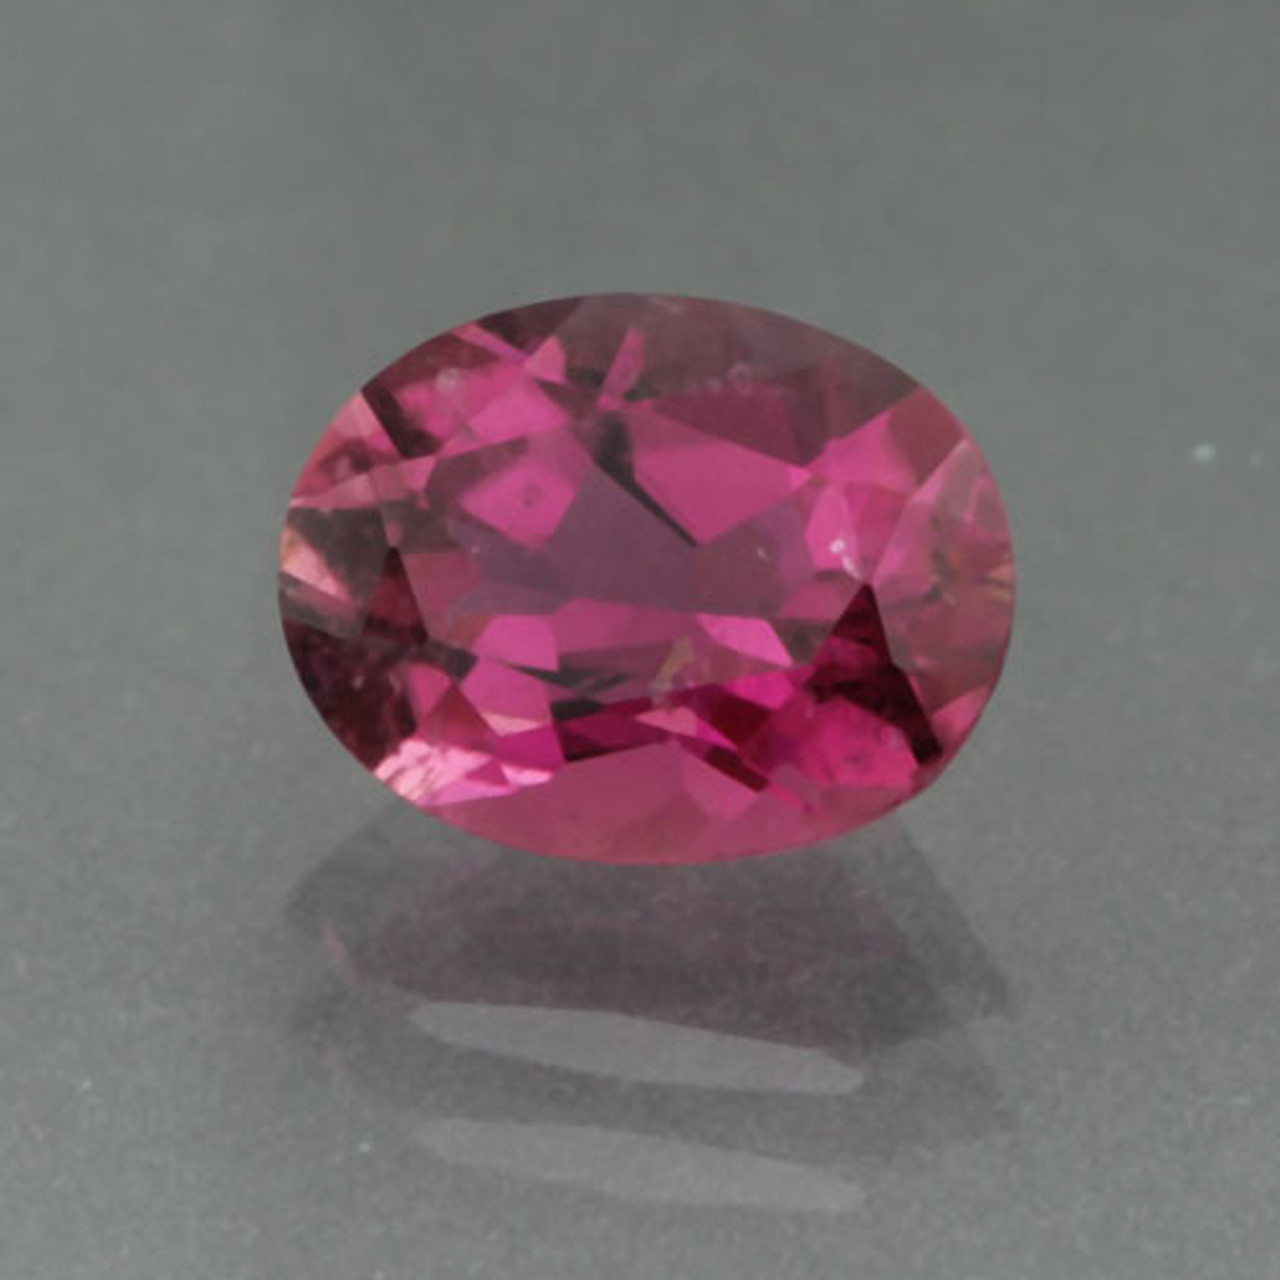 Loose Pink Tourmaline Gemstones